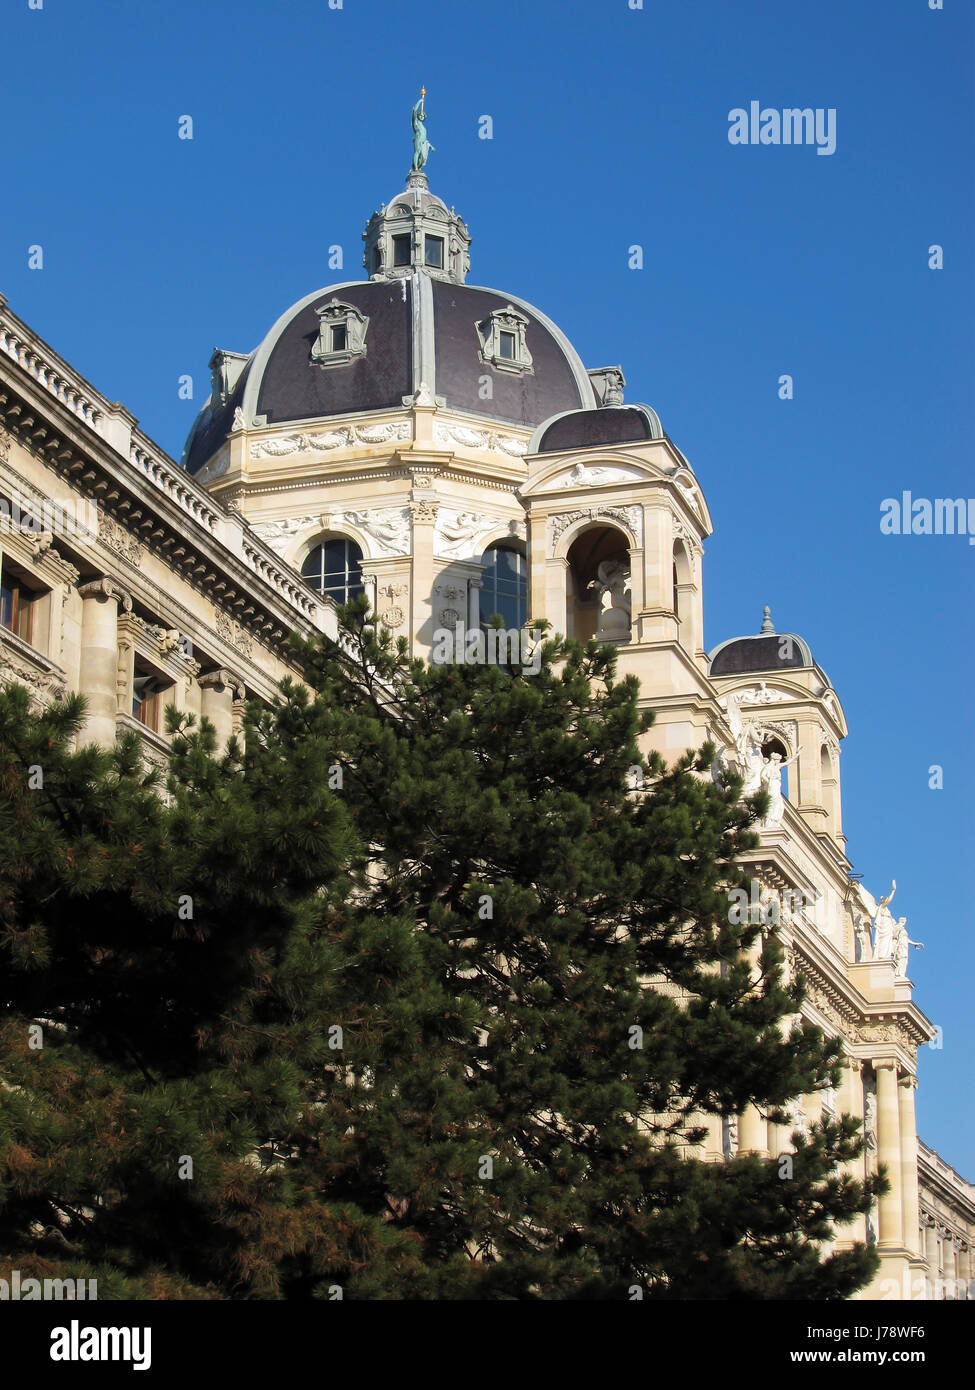 Musée historique de l'emblème des autrichiens de Vienne Vienne Autriche visites museum Banque D'Images